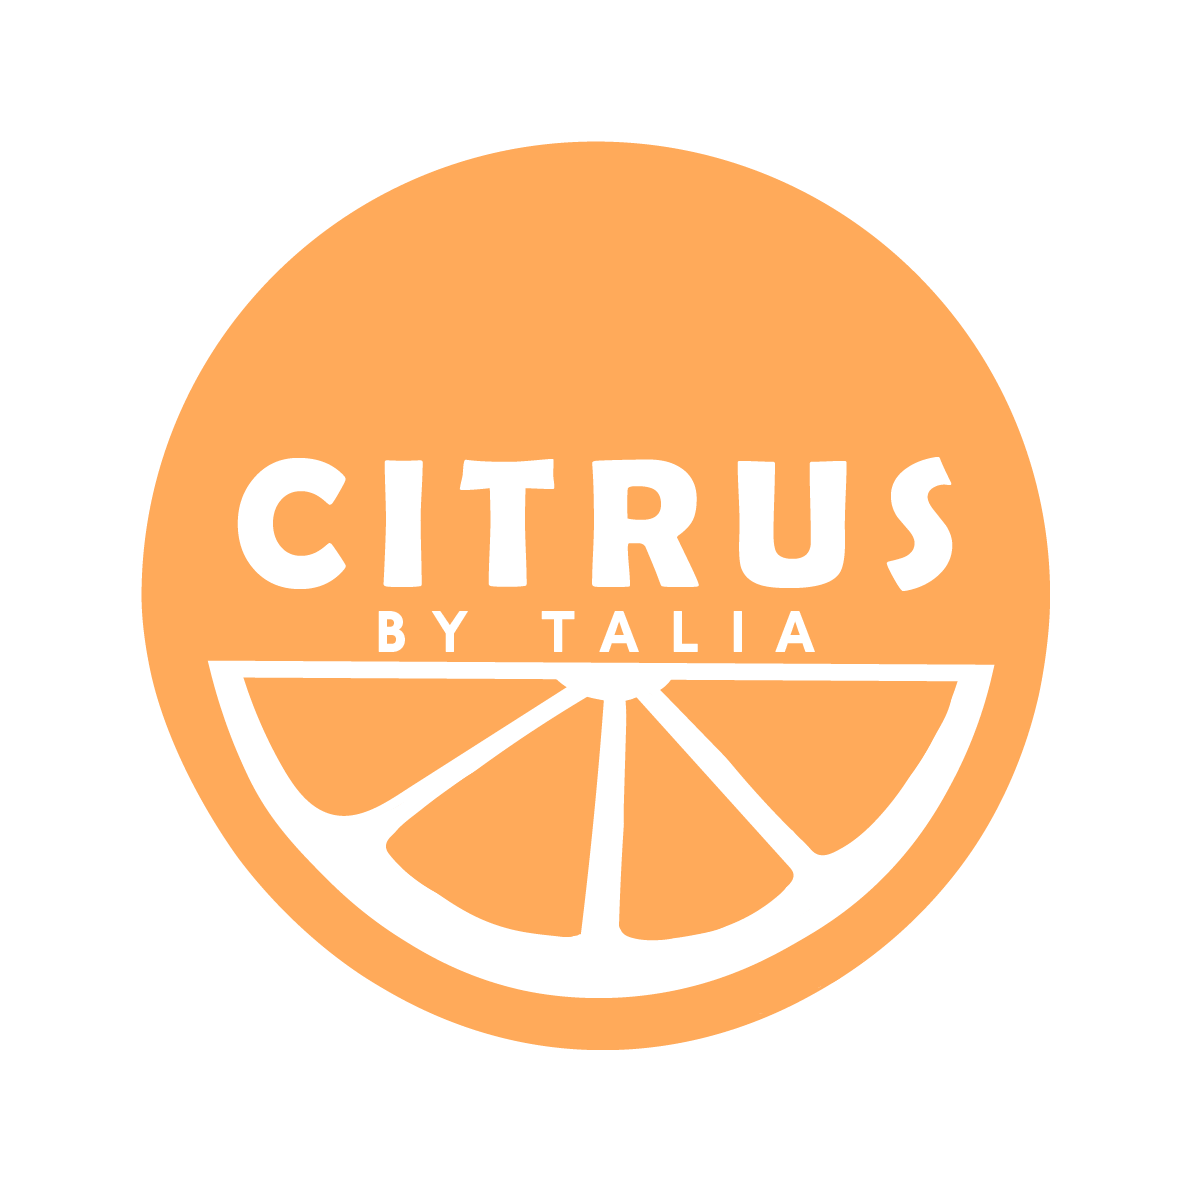 Citrus by Talia